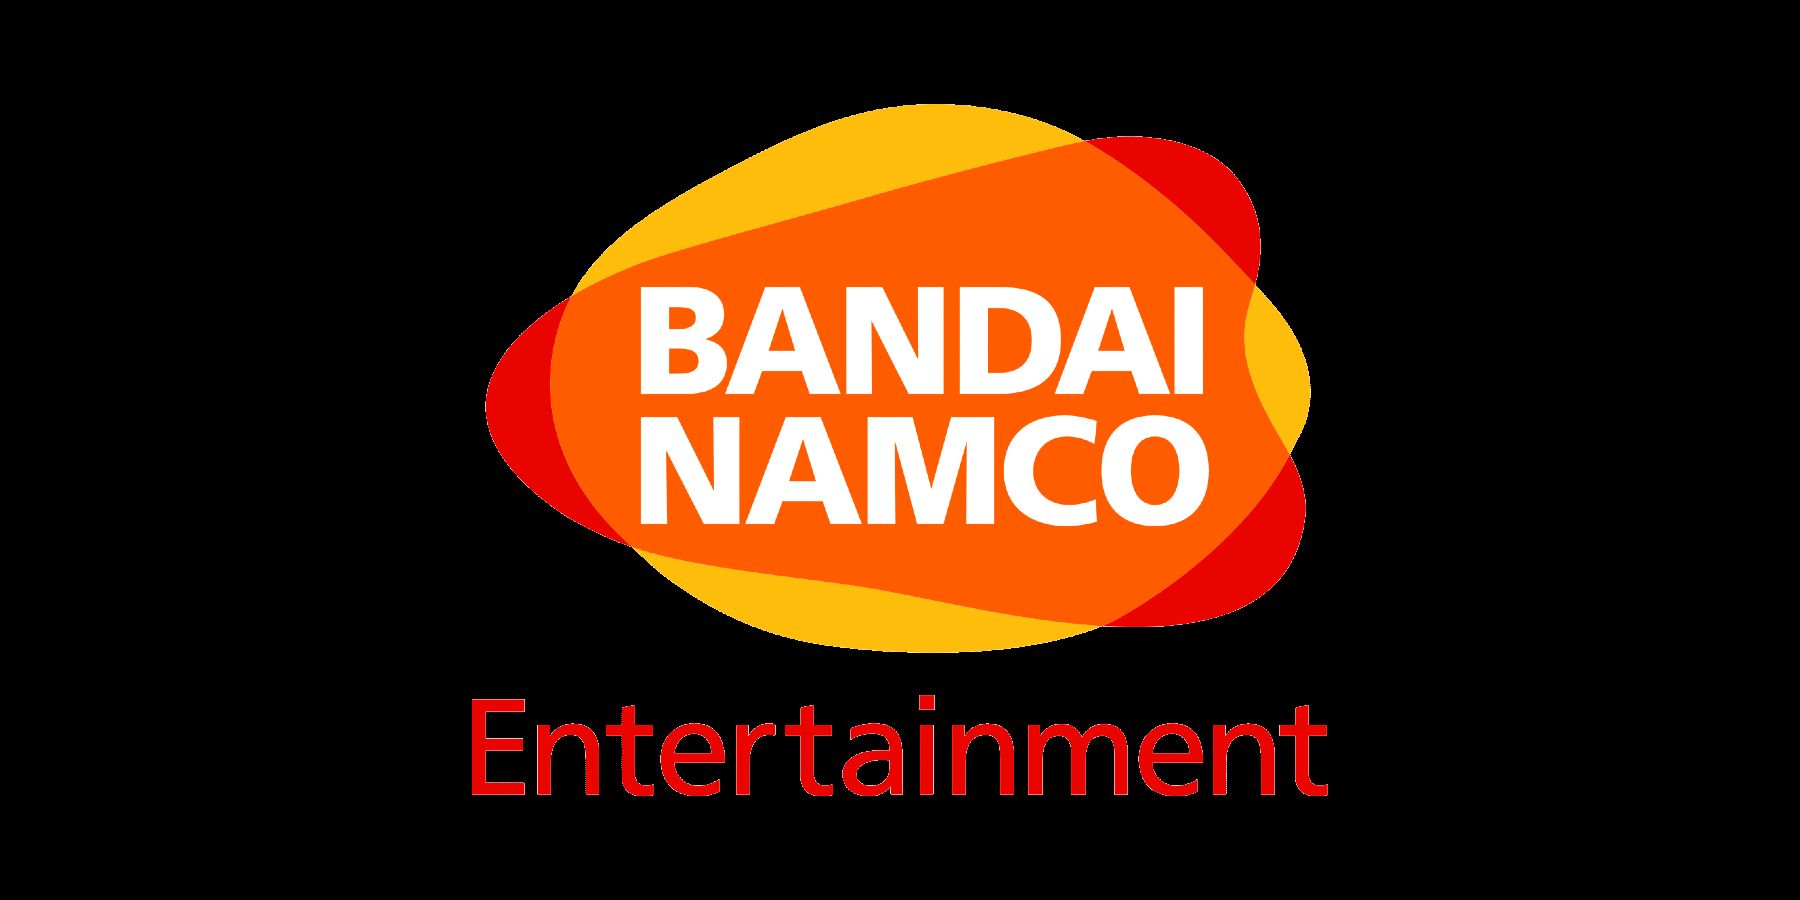 Bandai Namco har en ny logotyp